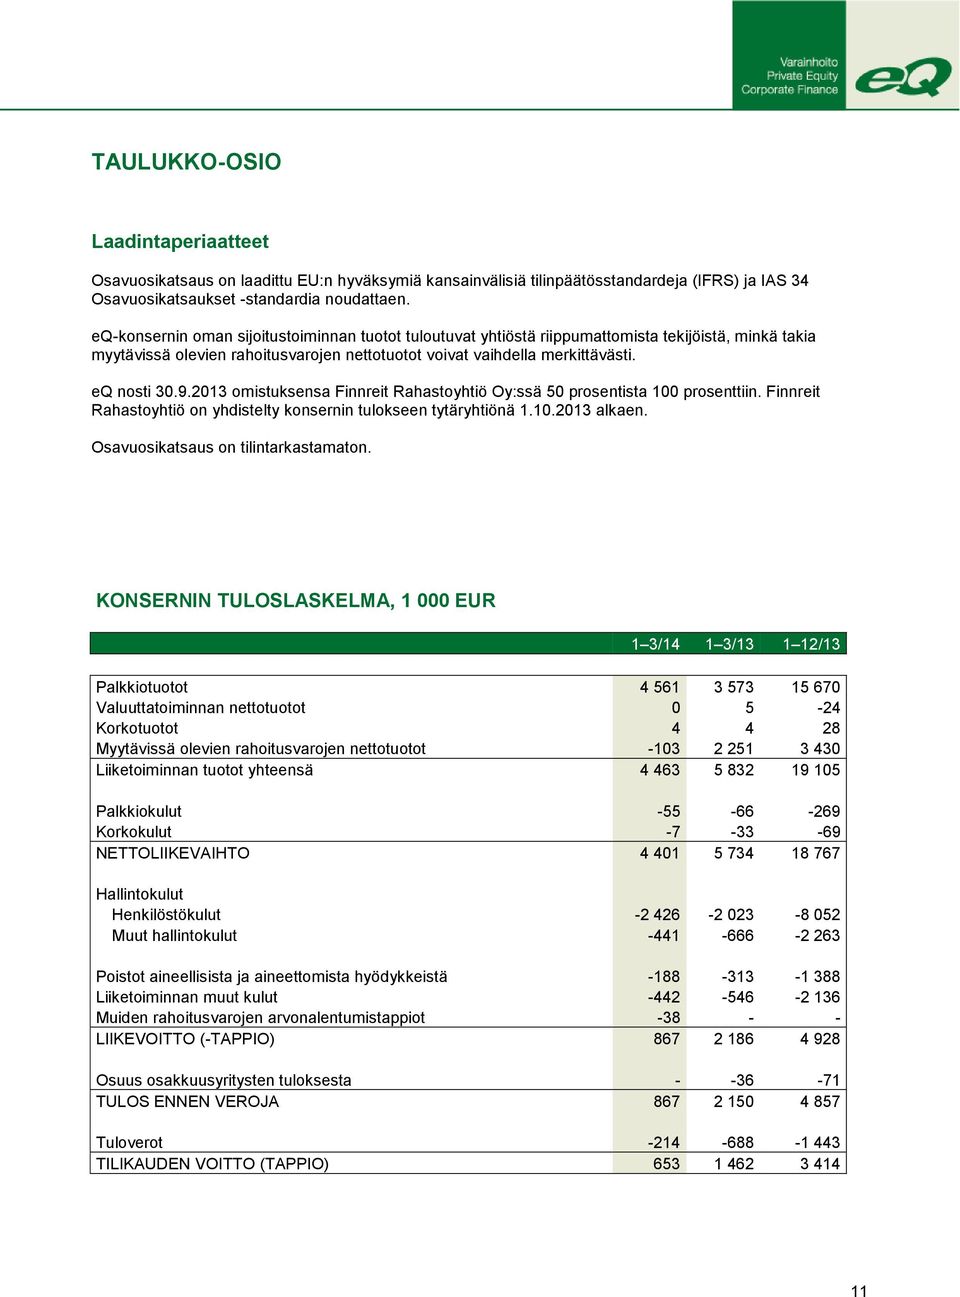 2013 omistuksensa Finnreit Rahastoyhtiö Oy:ssä 50 prosentista 100 prosenttiin. Finnreit Rahastoyhtiö on yhdistelty konsernin tulokseen tytäryhtiönä 1.10.2013 alkaen.